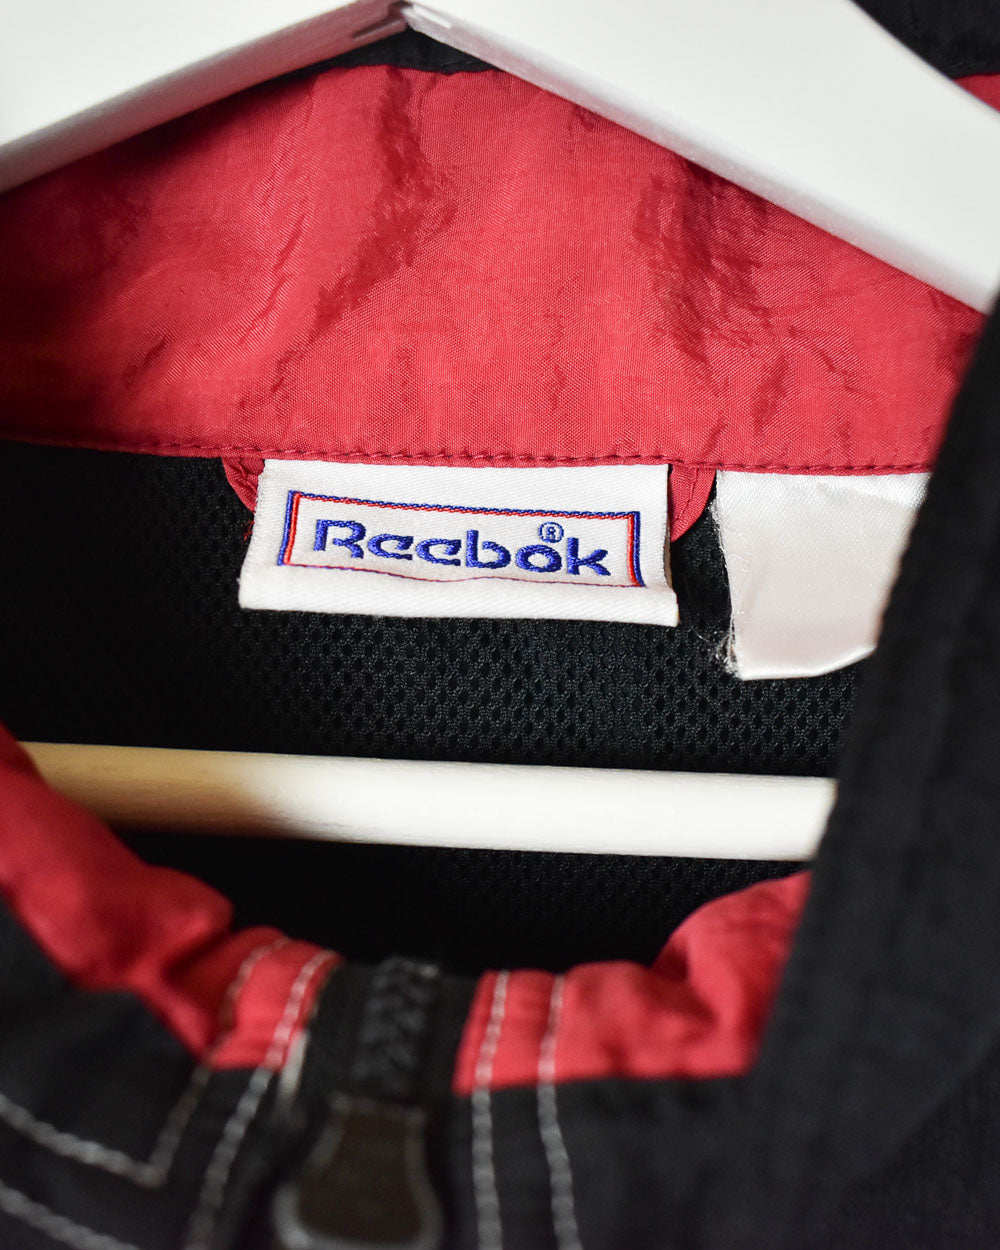 Black Reebok Shell Jacket - Large